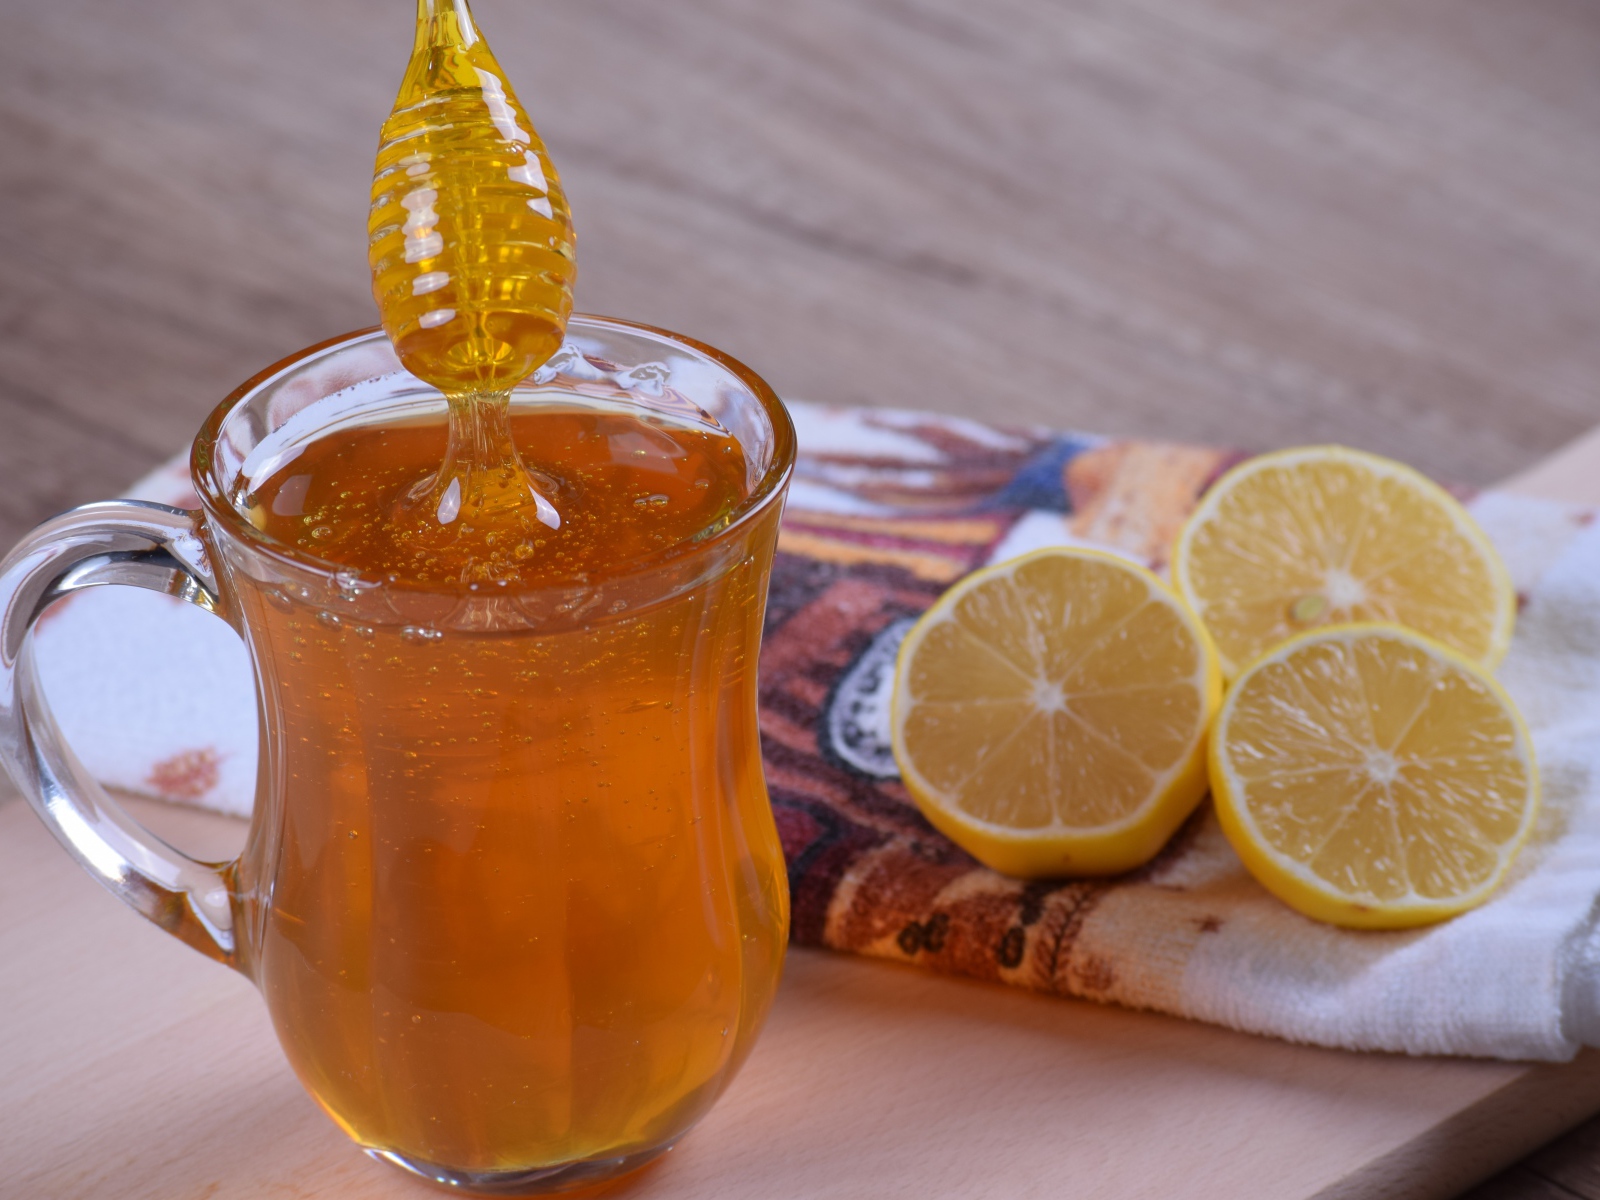 Glass mug with honey on the table with lemon